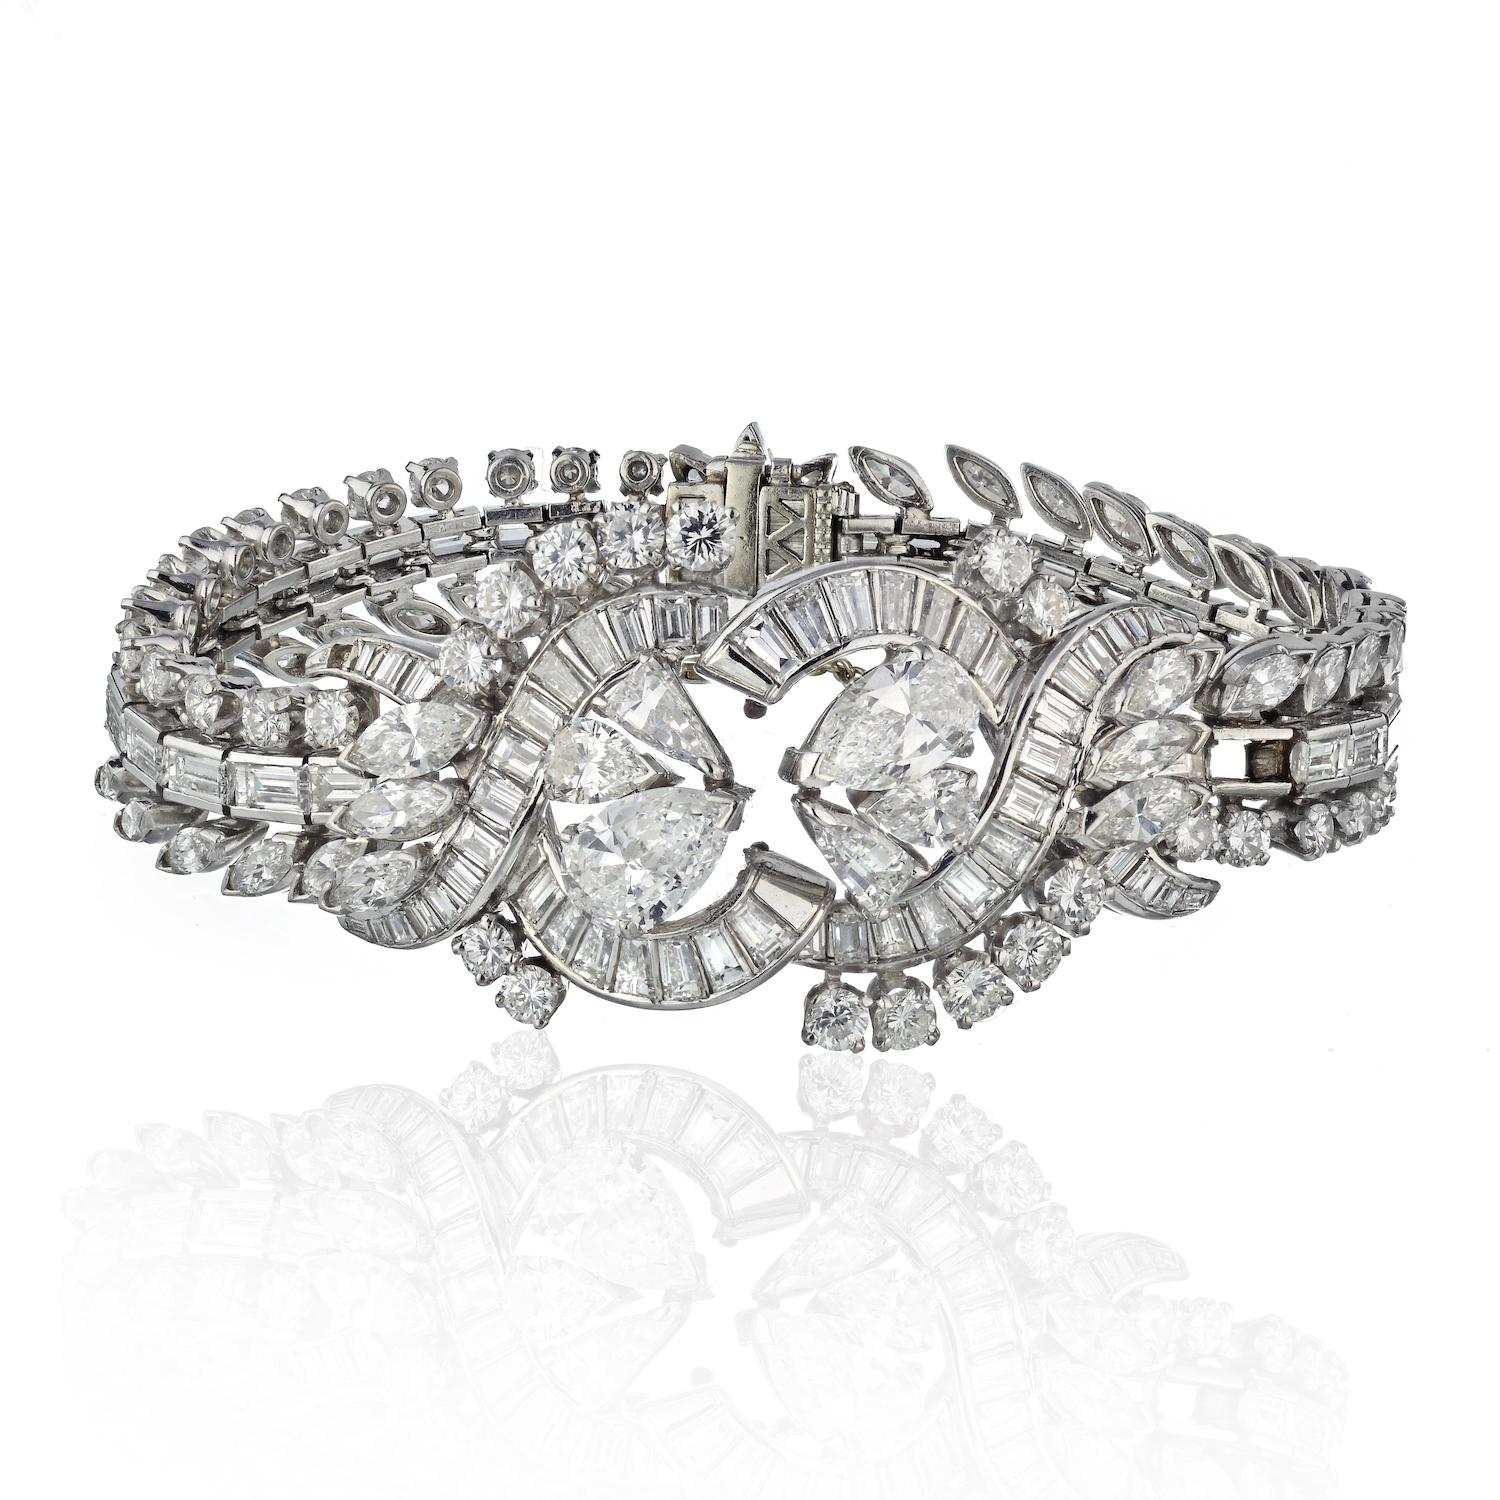 Lassen Sie sich mit diesem exquisiten Diamantarmband in den Glamour der 1970er Jahre entführen - ein wahres Zeugnis zeitloser Eleganz. 

Dieses sorgfältig aus Platin gefertigte Armband besticht durch eine Vielzahl von Diamanten, darunter Steine im